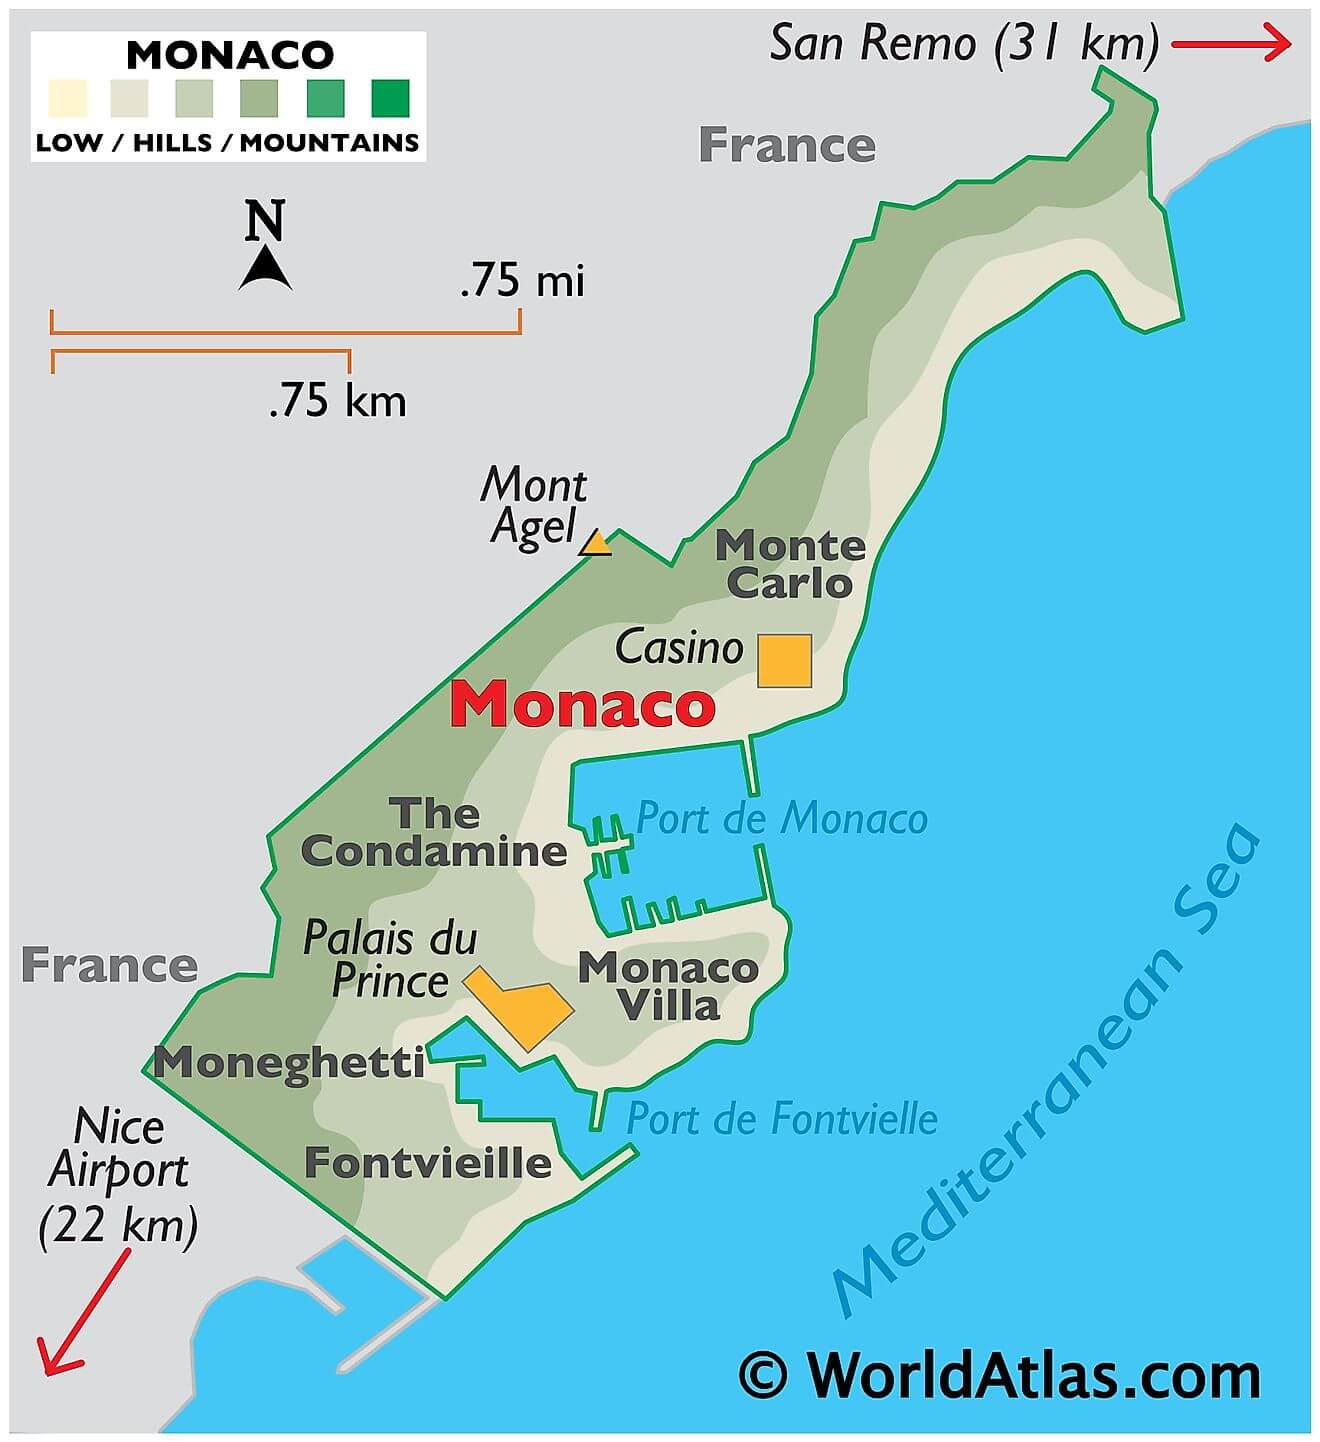 Bản đồ vật lý của Monaco